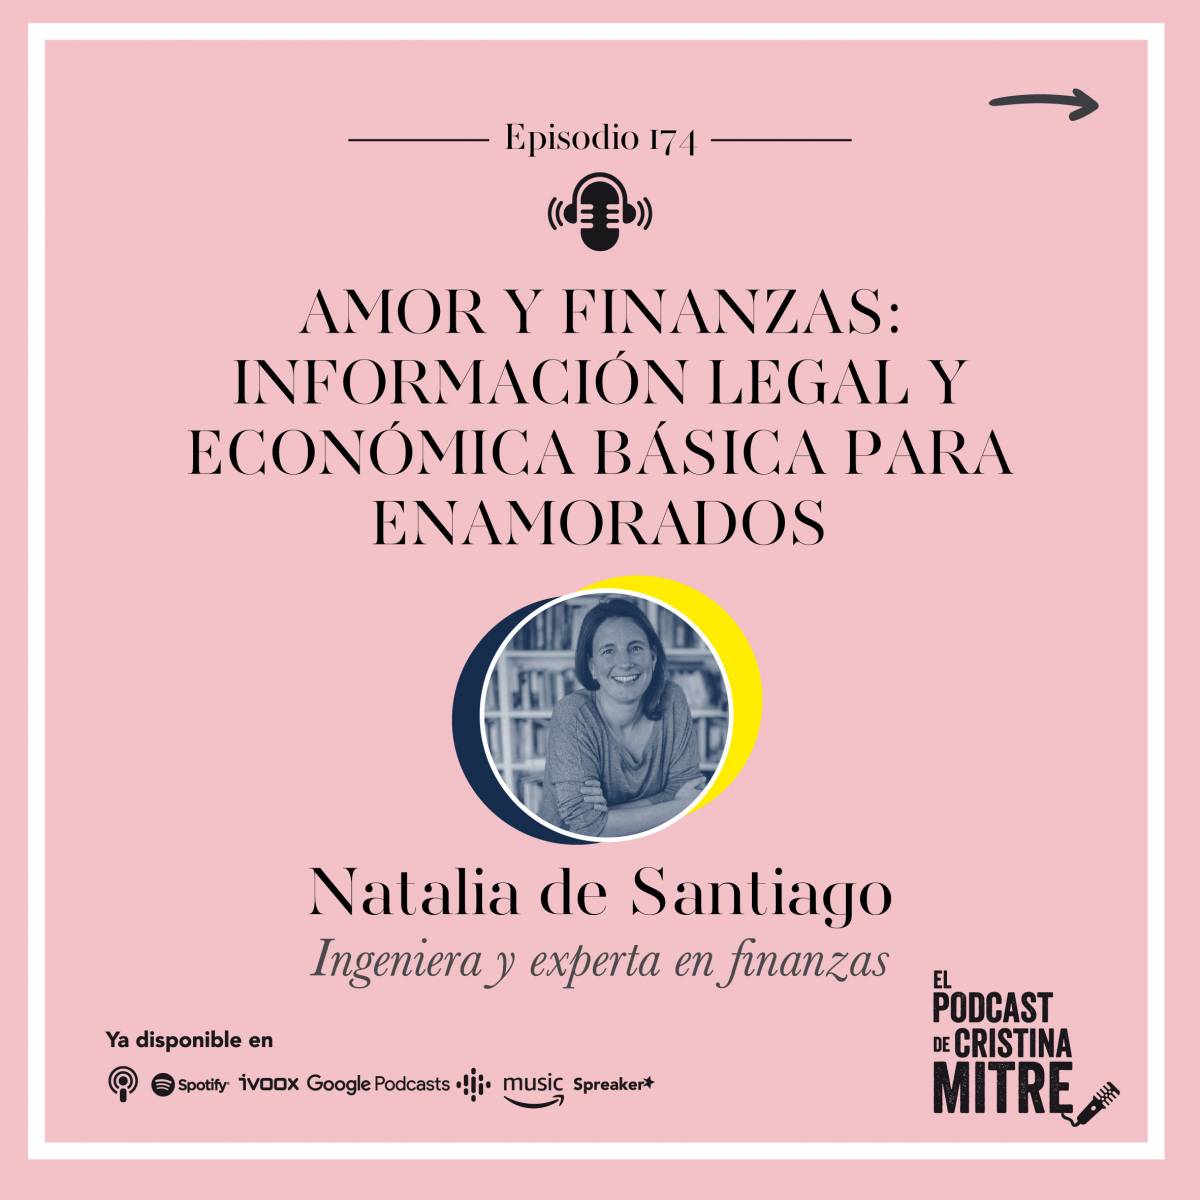 Cristina Mitre Natalia de Santiago Matrimonios Parejas de hecho